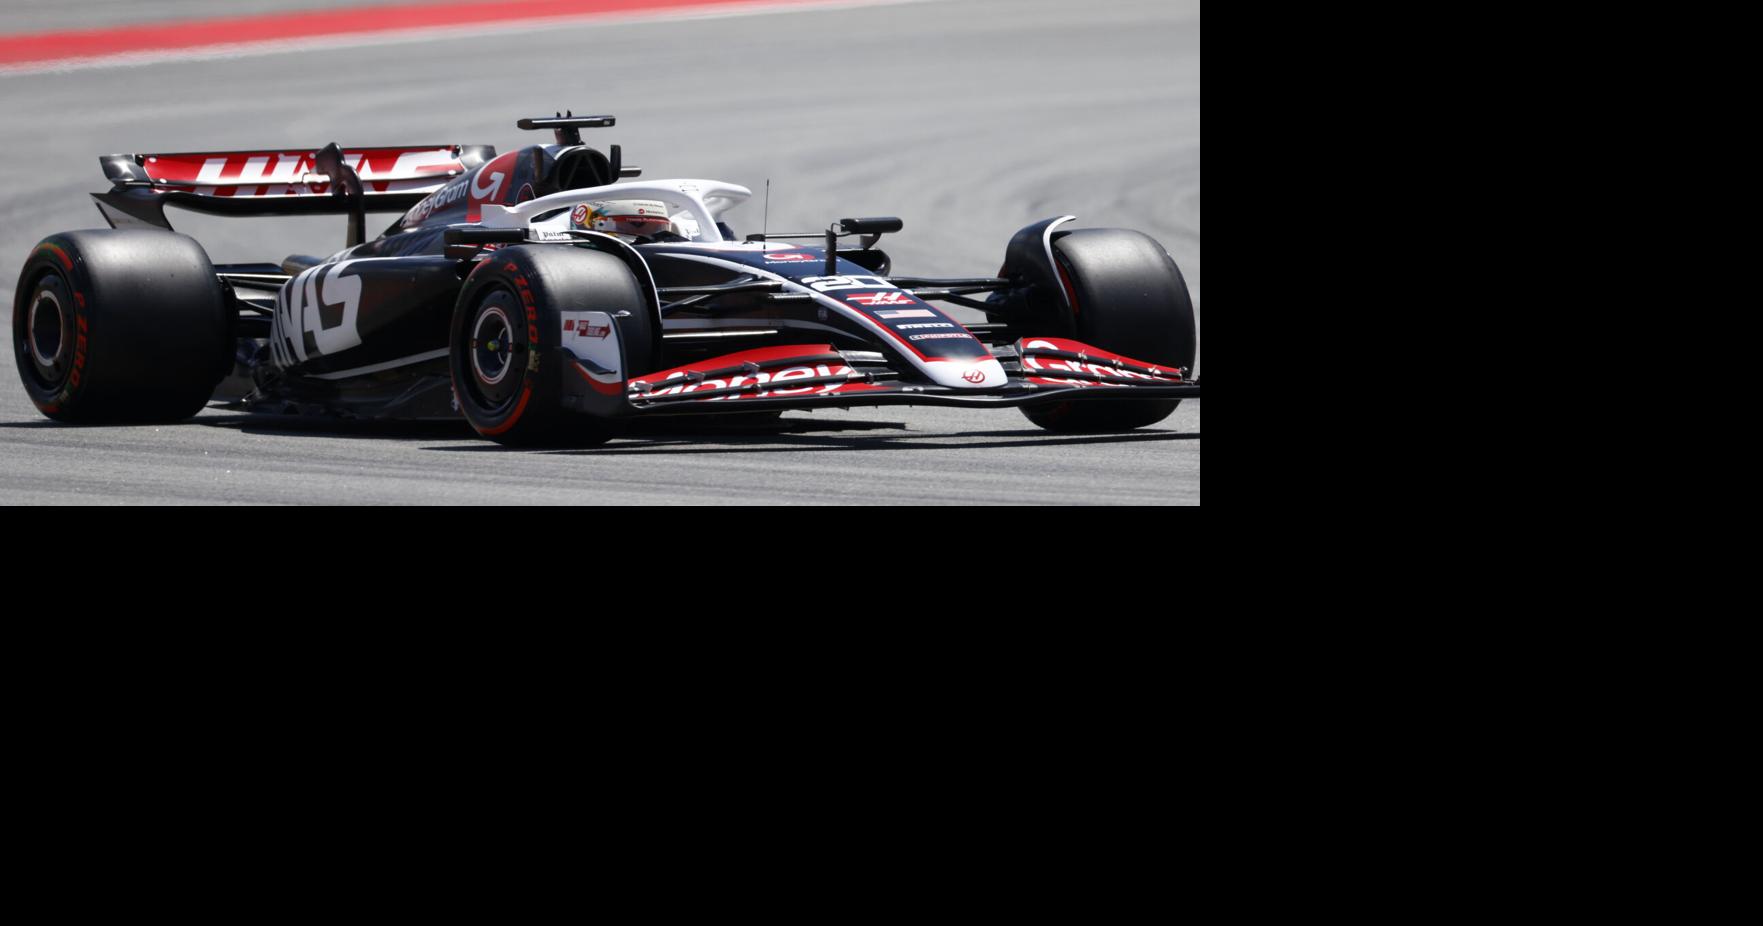 Завершилось арбитражное разбирательство команды Haas F1 Team с бывшим российским спонсором «Уралкалием» |  Виды спорта